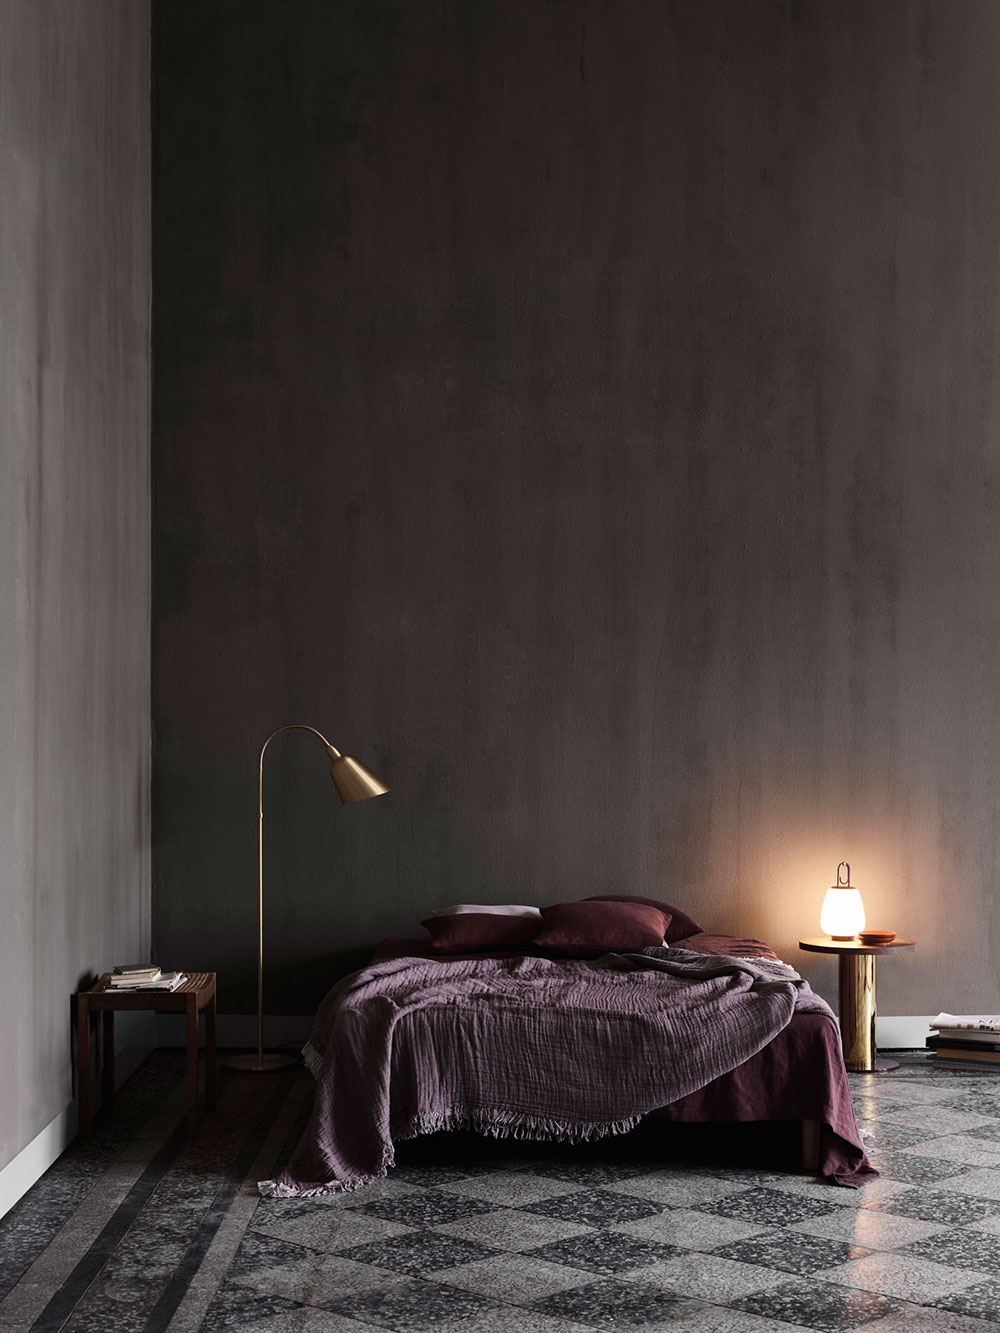 Стильная новая коллекция мебели от датского бренда &Tradition